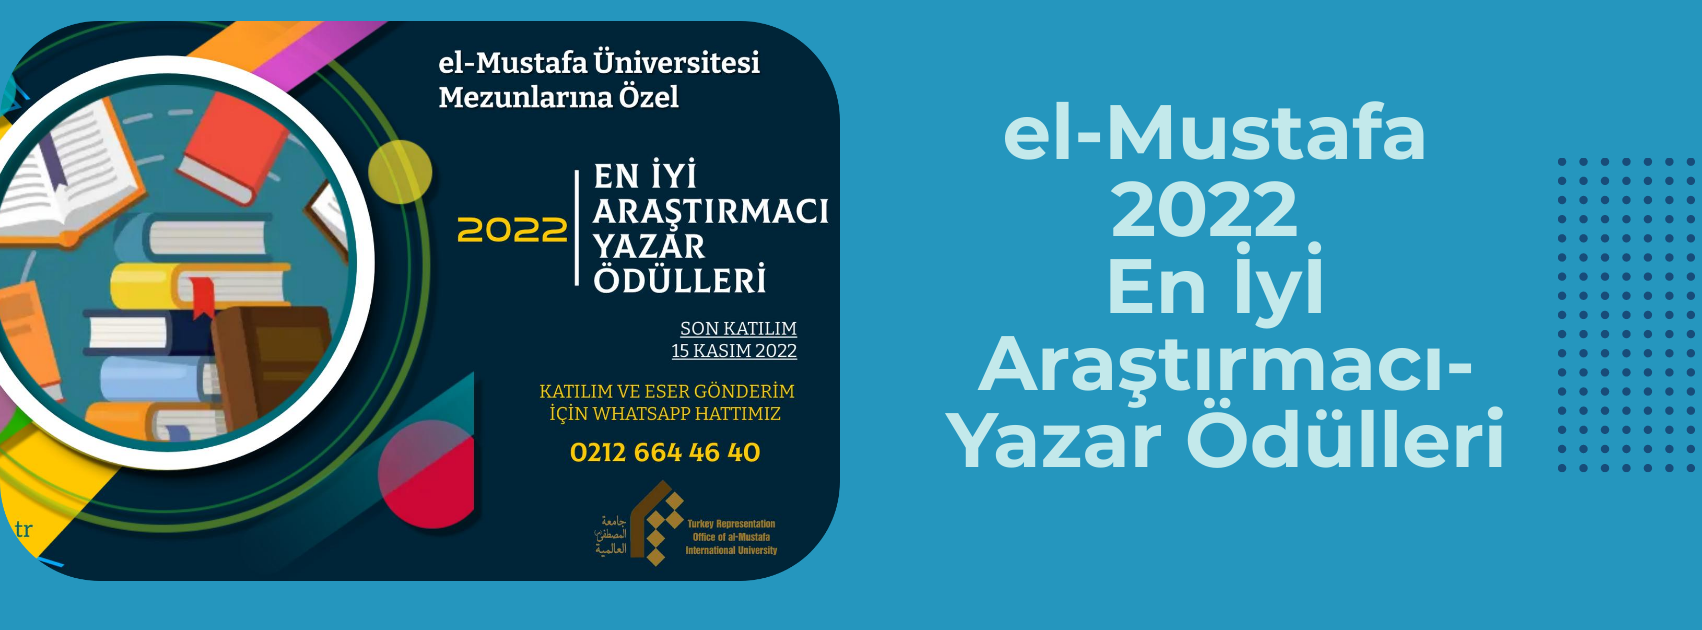 el-Mustafa 2022 En İyi Araştırmacı-Yazar Ödülleri